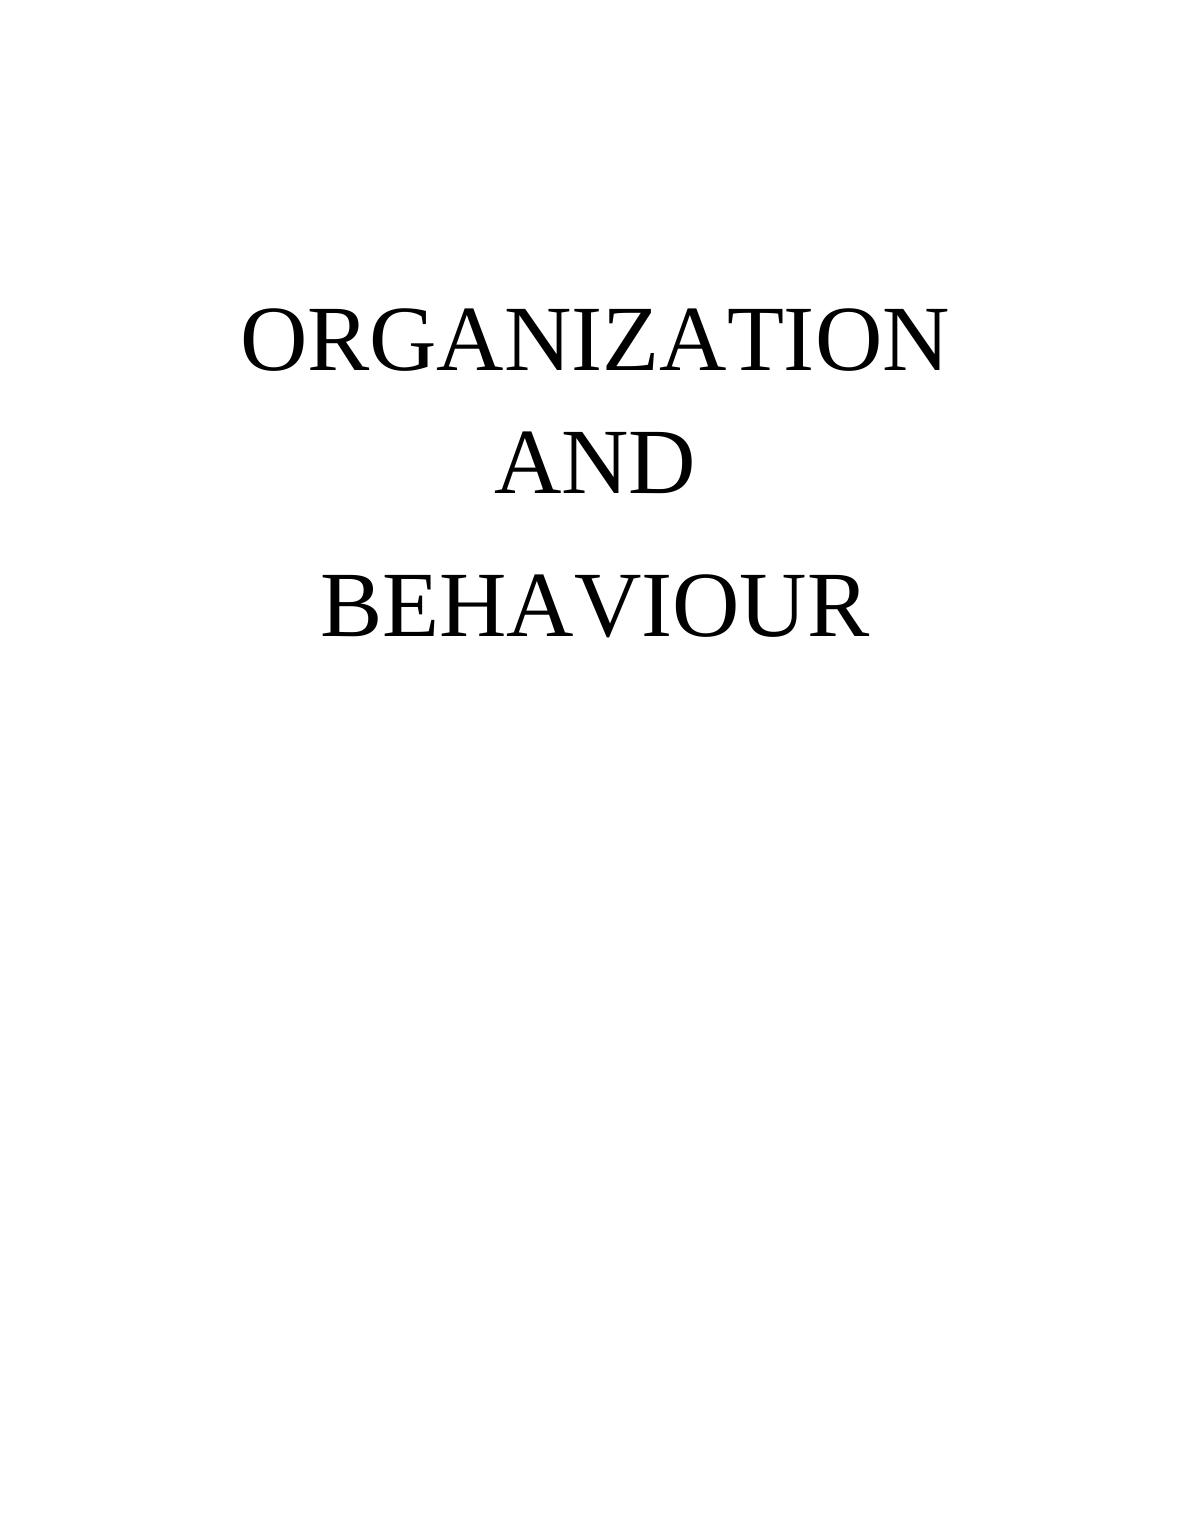 Individual Behavior at Work : Report_1